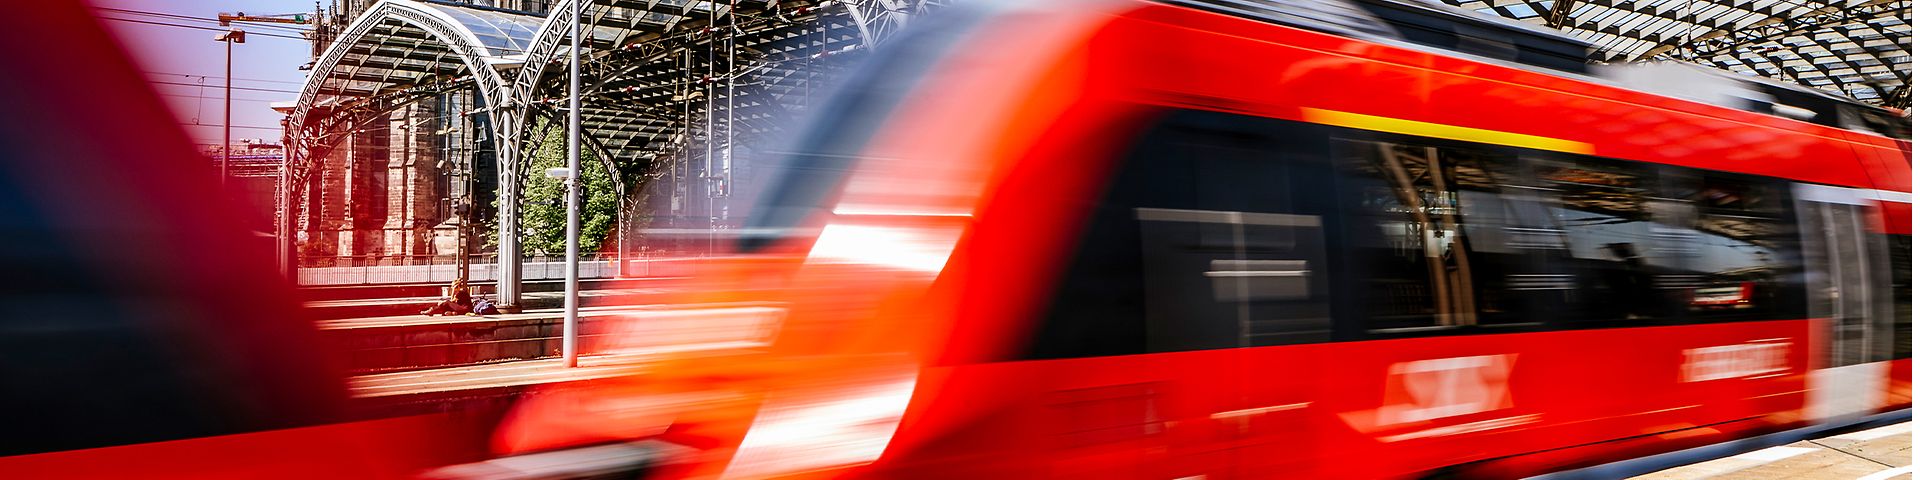 Dynamisches Bild eines vom Bahnhof ausfahrenden Zugs mit Kölner Dom im Hintergrund.